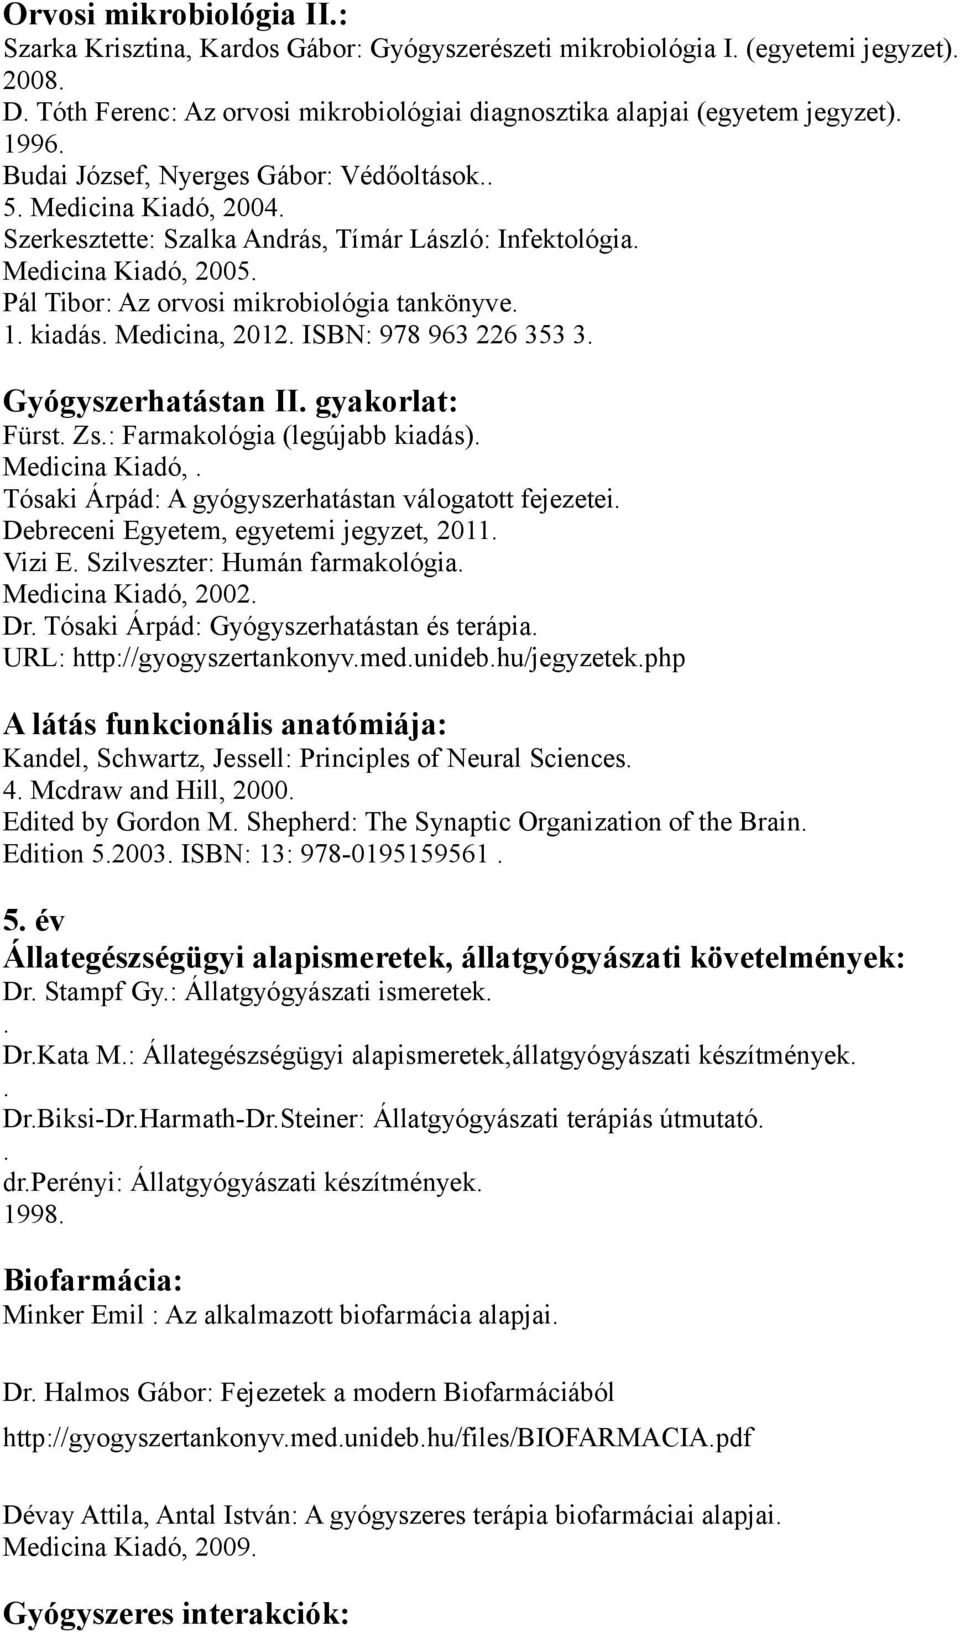 Medicina, 2012 ISBN: 978 963 226 353 3 Gyógyszerhatástan II gyakorlat: Fürst Zs: Farmakológia (legújabb kiadás) Medicina Kiadó, Tósaki Árpád: A gyógyszerhatástan válogatott fejezetei Debreceni